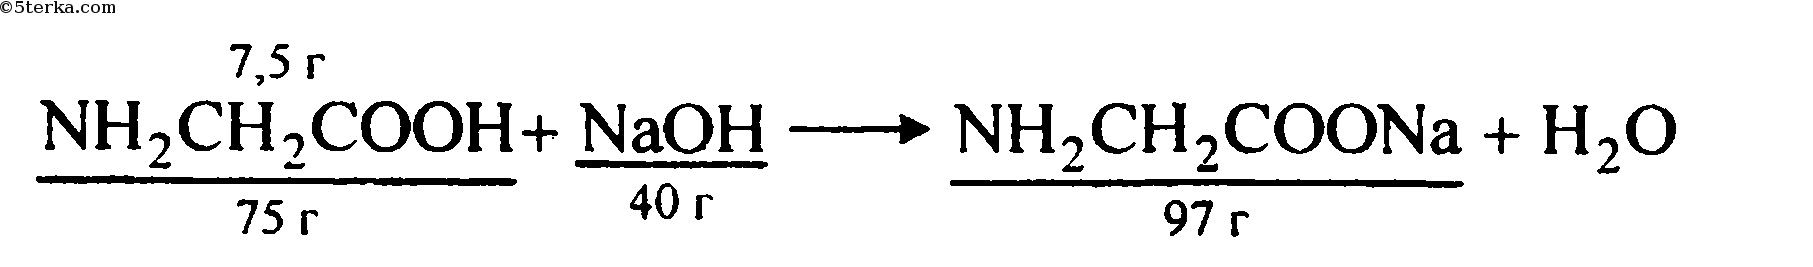 Гидроксид натрия реагирует с аминоуксусной кислотой. Аминоуксусная кислота и гидроксид натрия. Реакция взаимодействия аминоуксусной кислоты с гидроксидом натрия. Взаимодействие аминоуксусной кислоты с гидроксидом натрия. Реакция взаимодействия аминоуксусной кислоты с натрием.